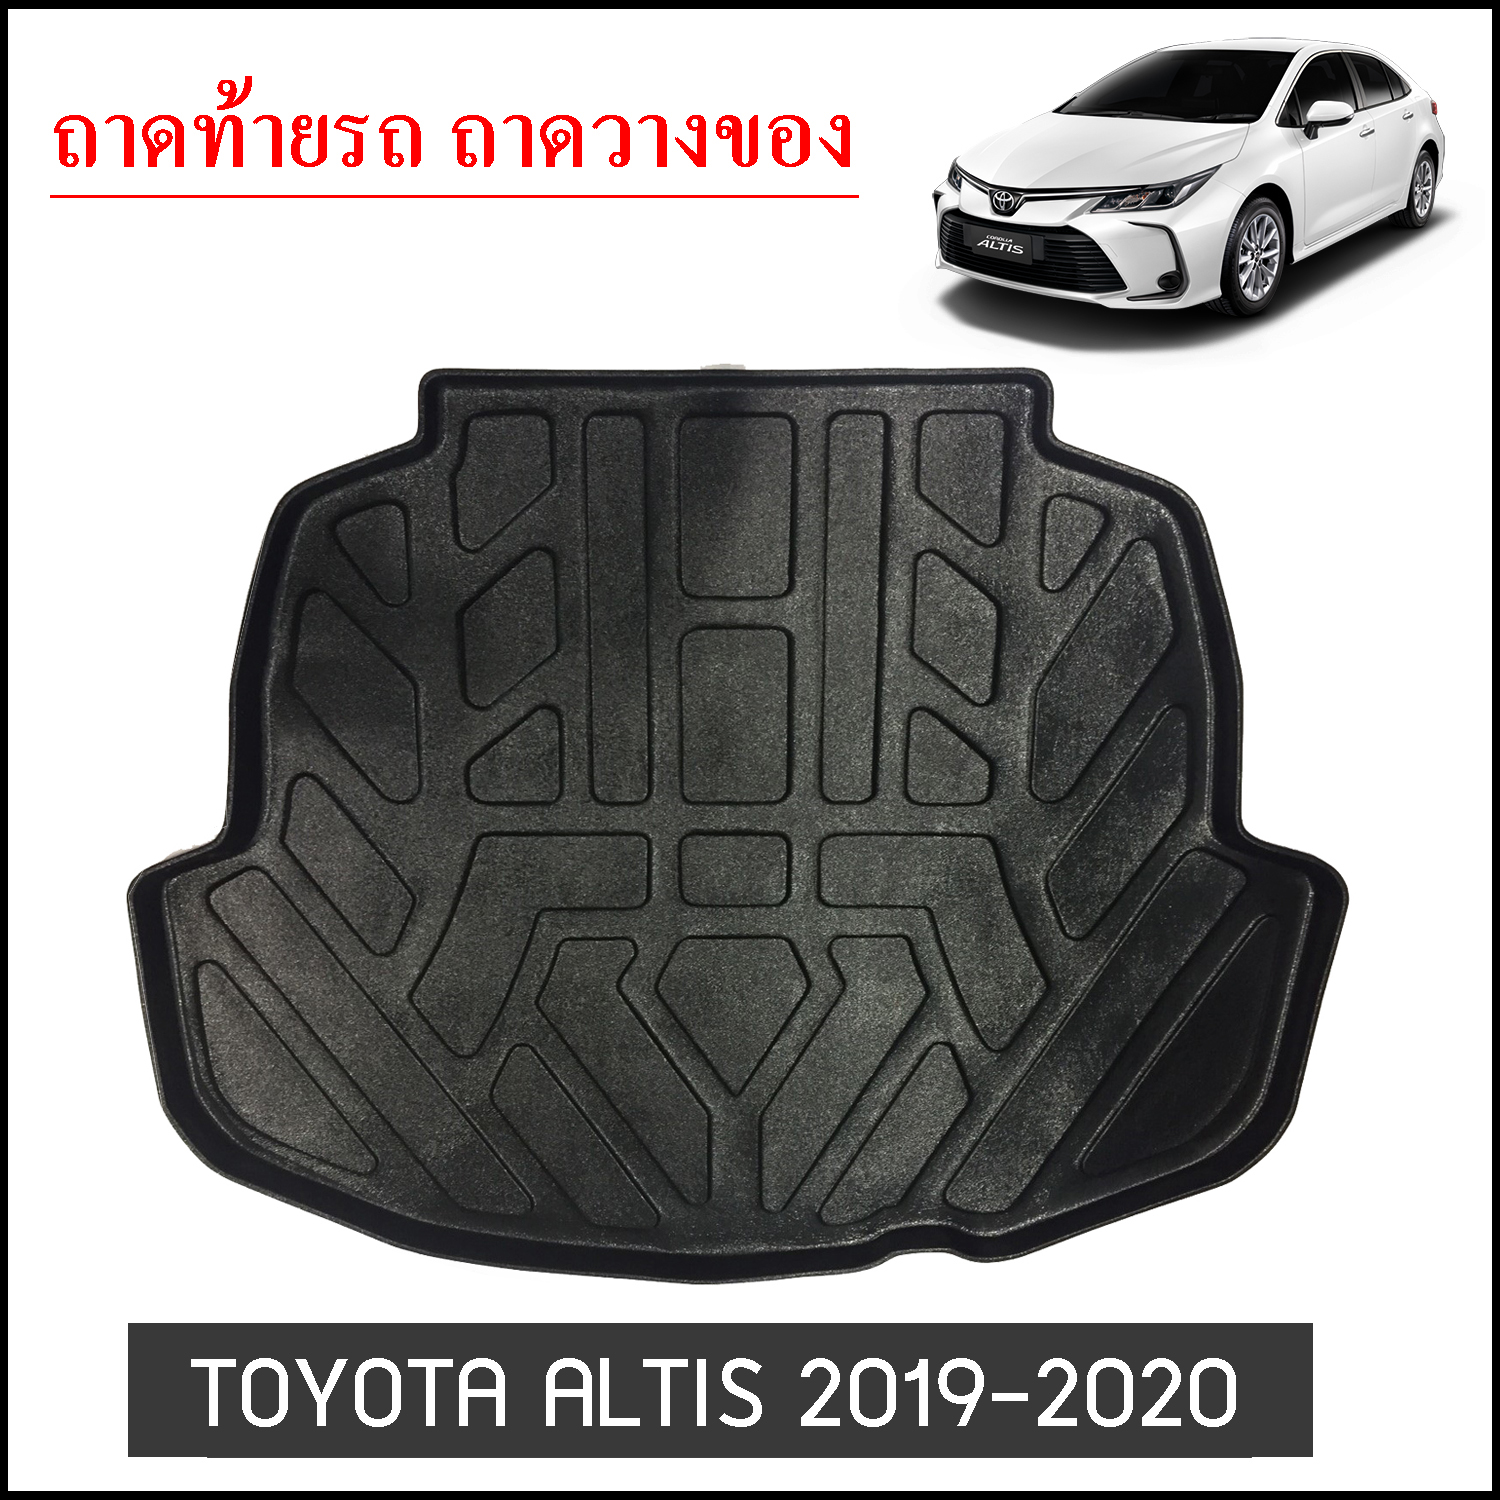 ถาดท้ายวางของ Toyota Altis 2019-2020